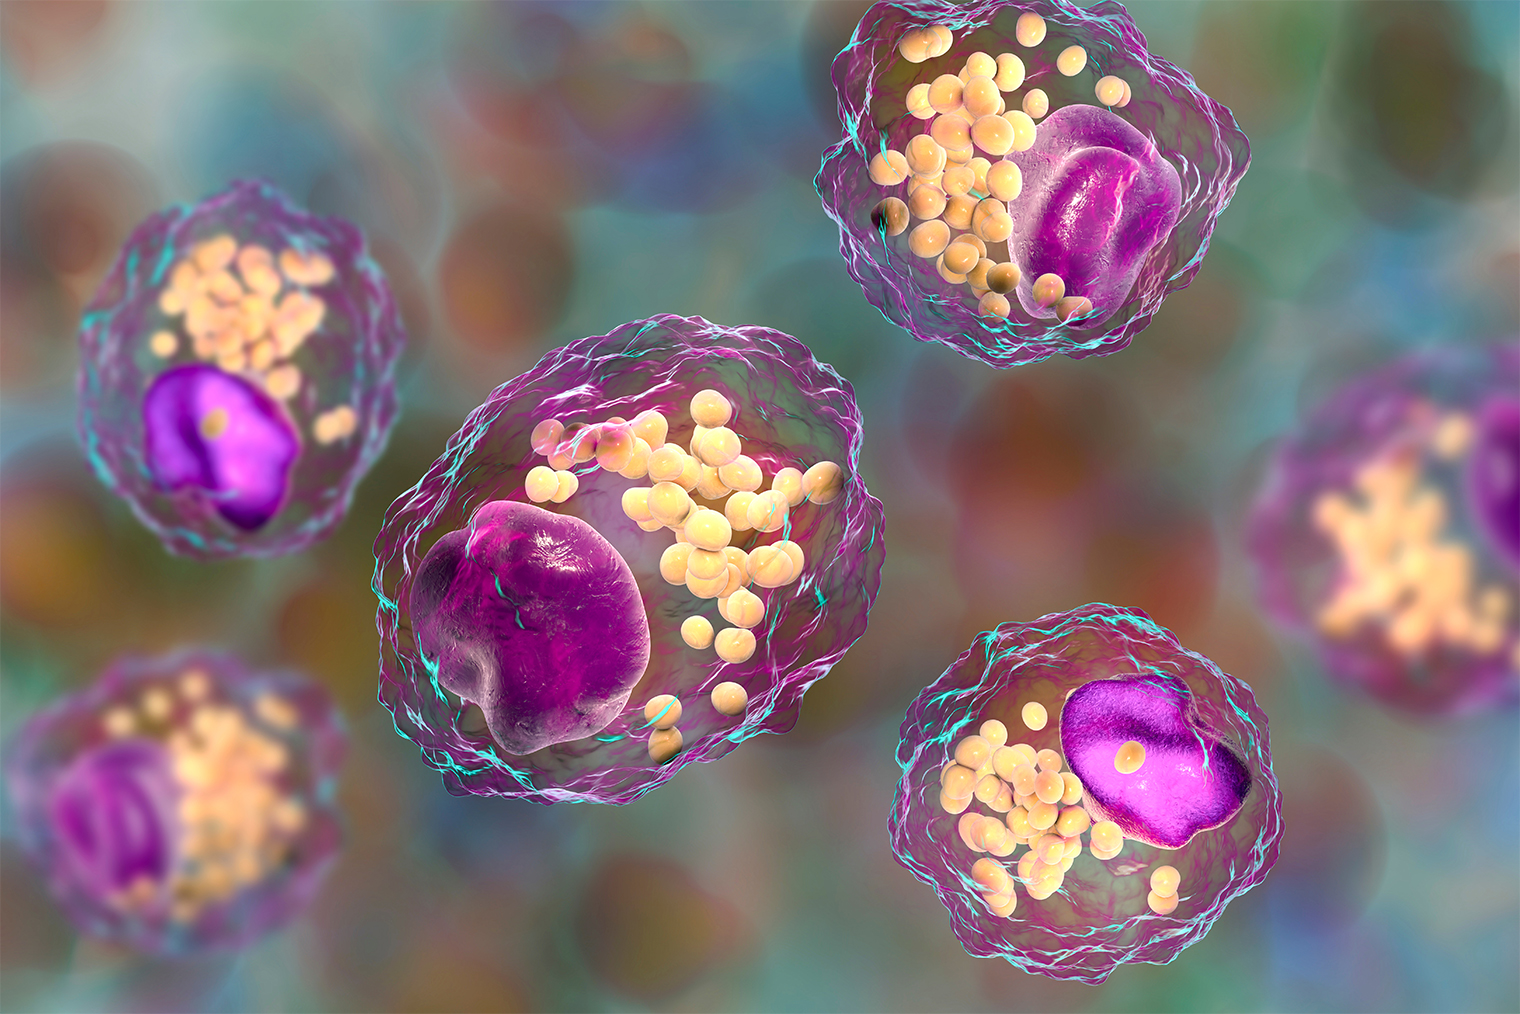 Пенистые клетки — макрофаги с крупными липидными каплями внутри. Иллюстрация: Kateryna Kon / Shutterstock / FOTODOM